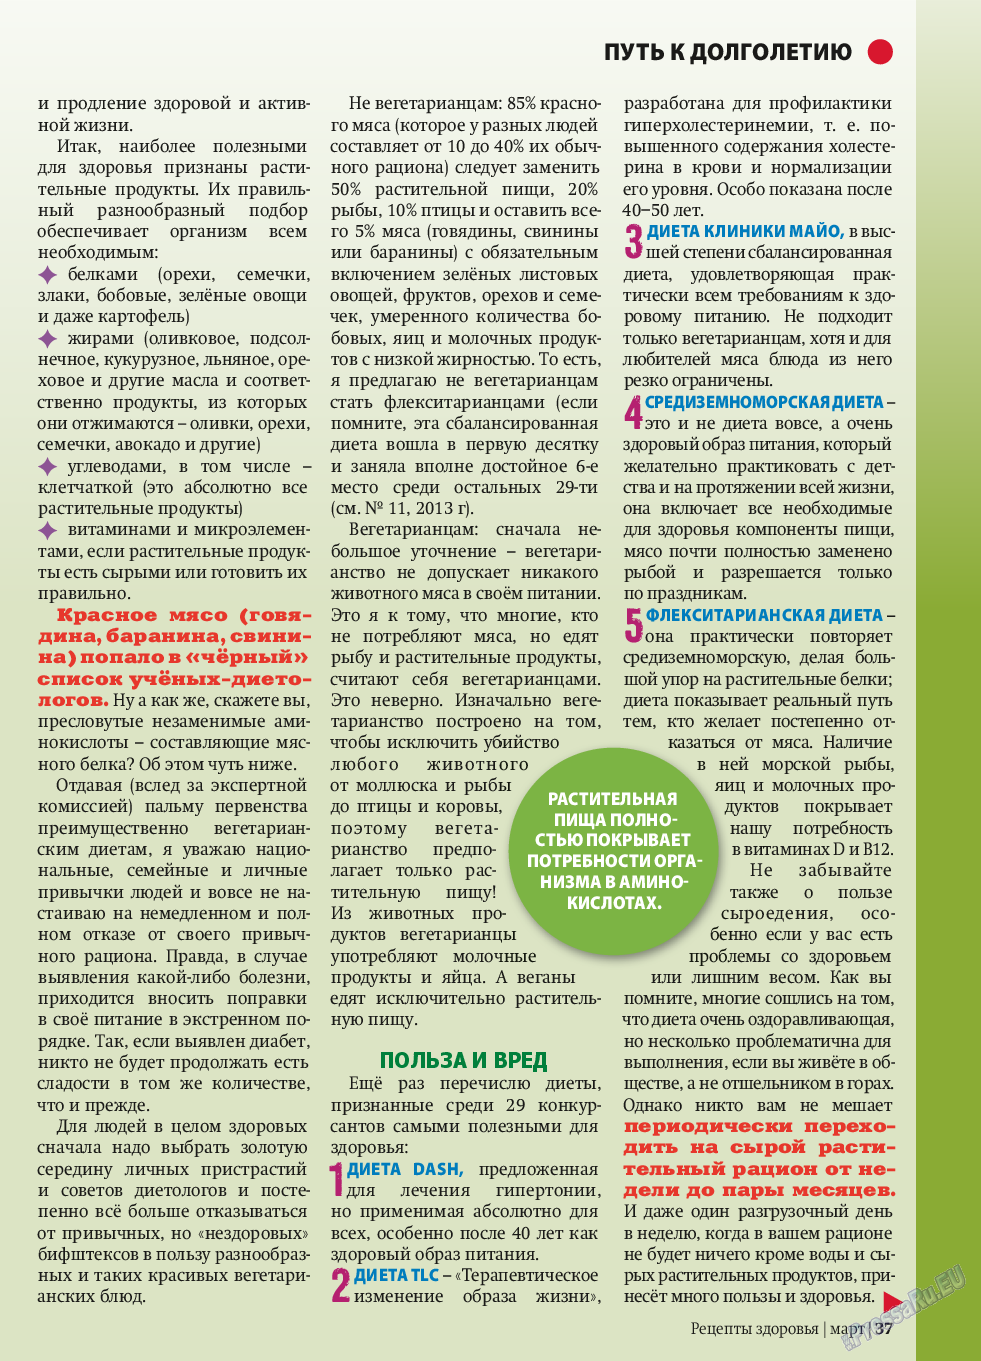 Рецепты здоровья, журнал. 2014 №58 стр.37